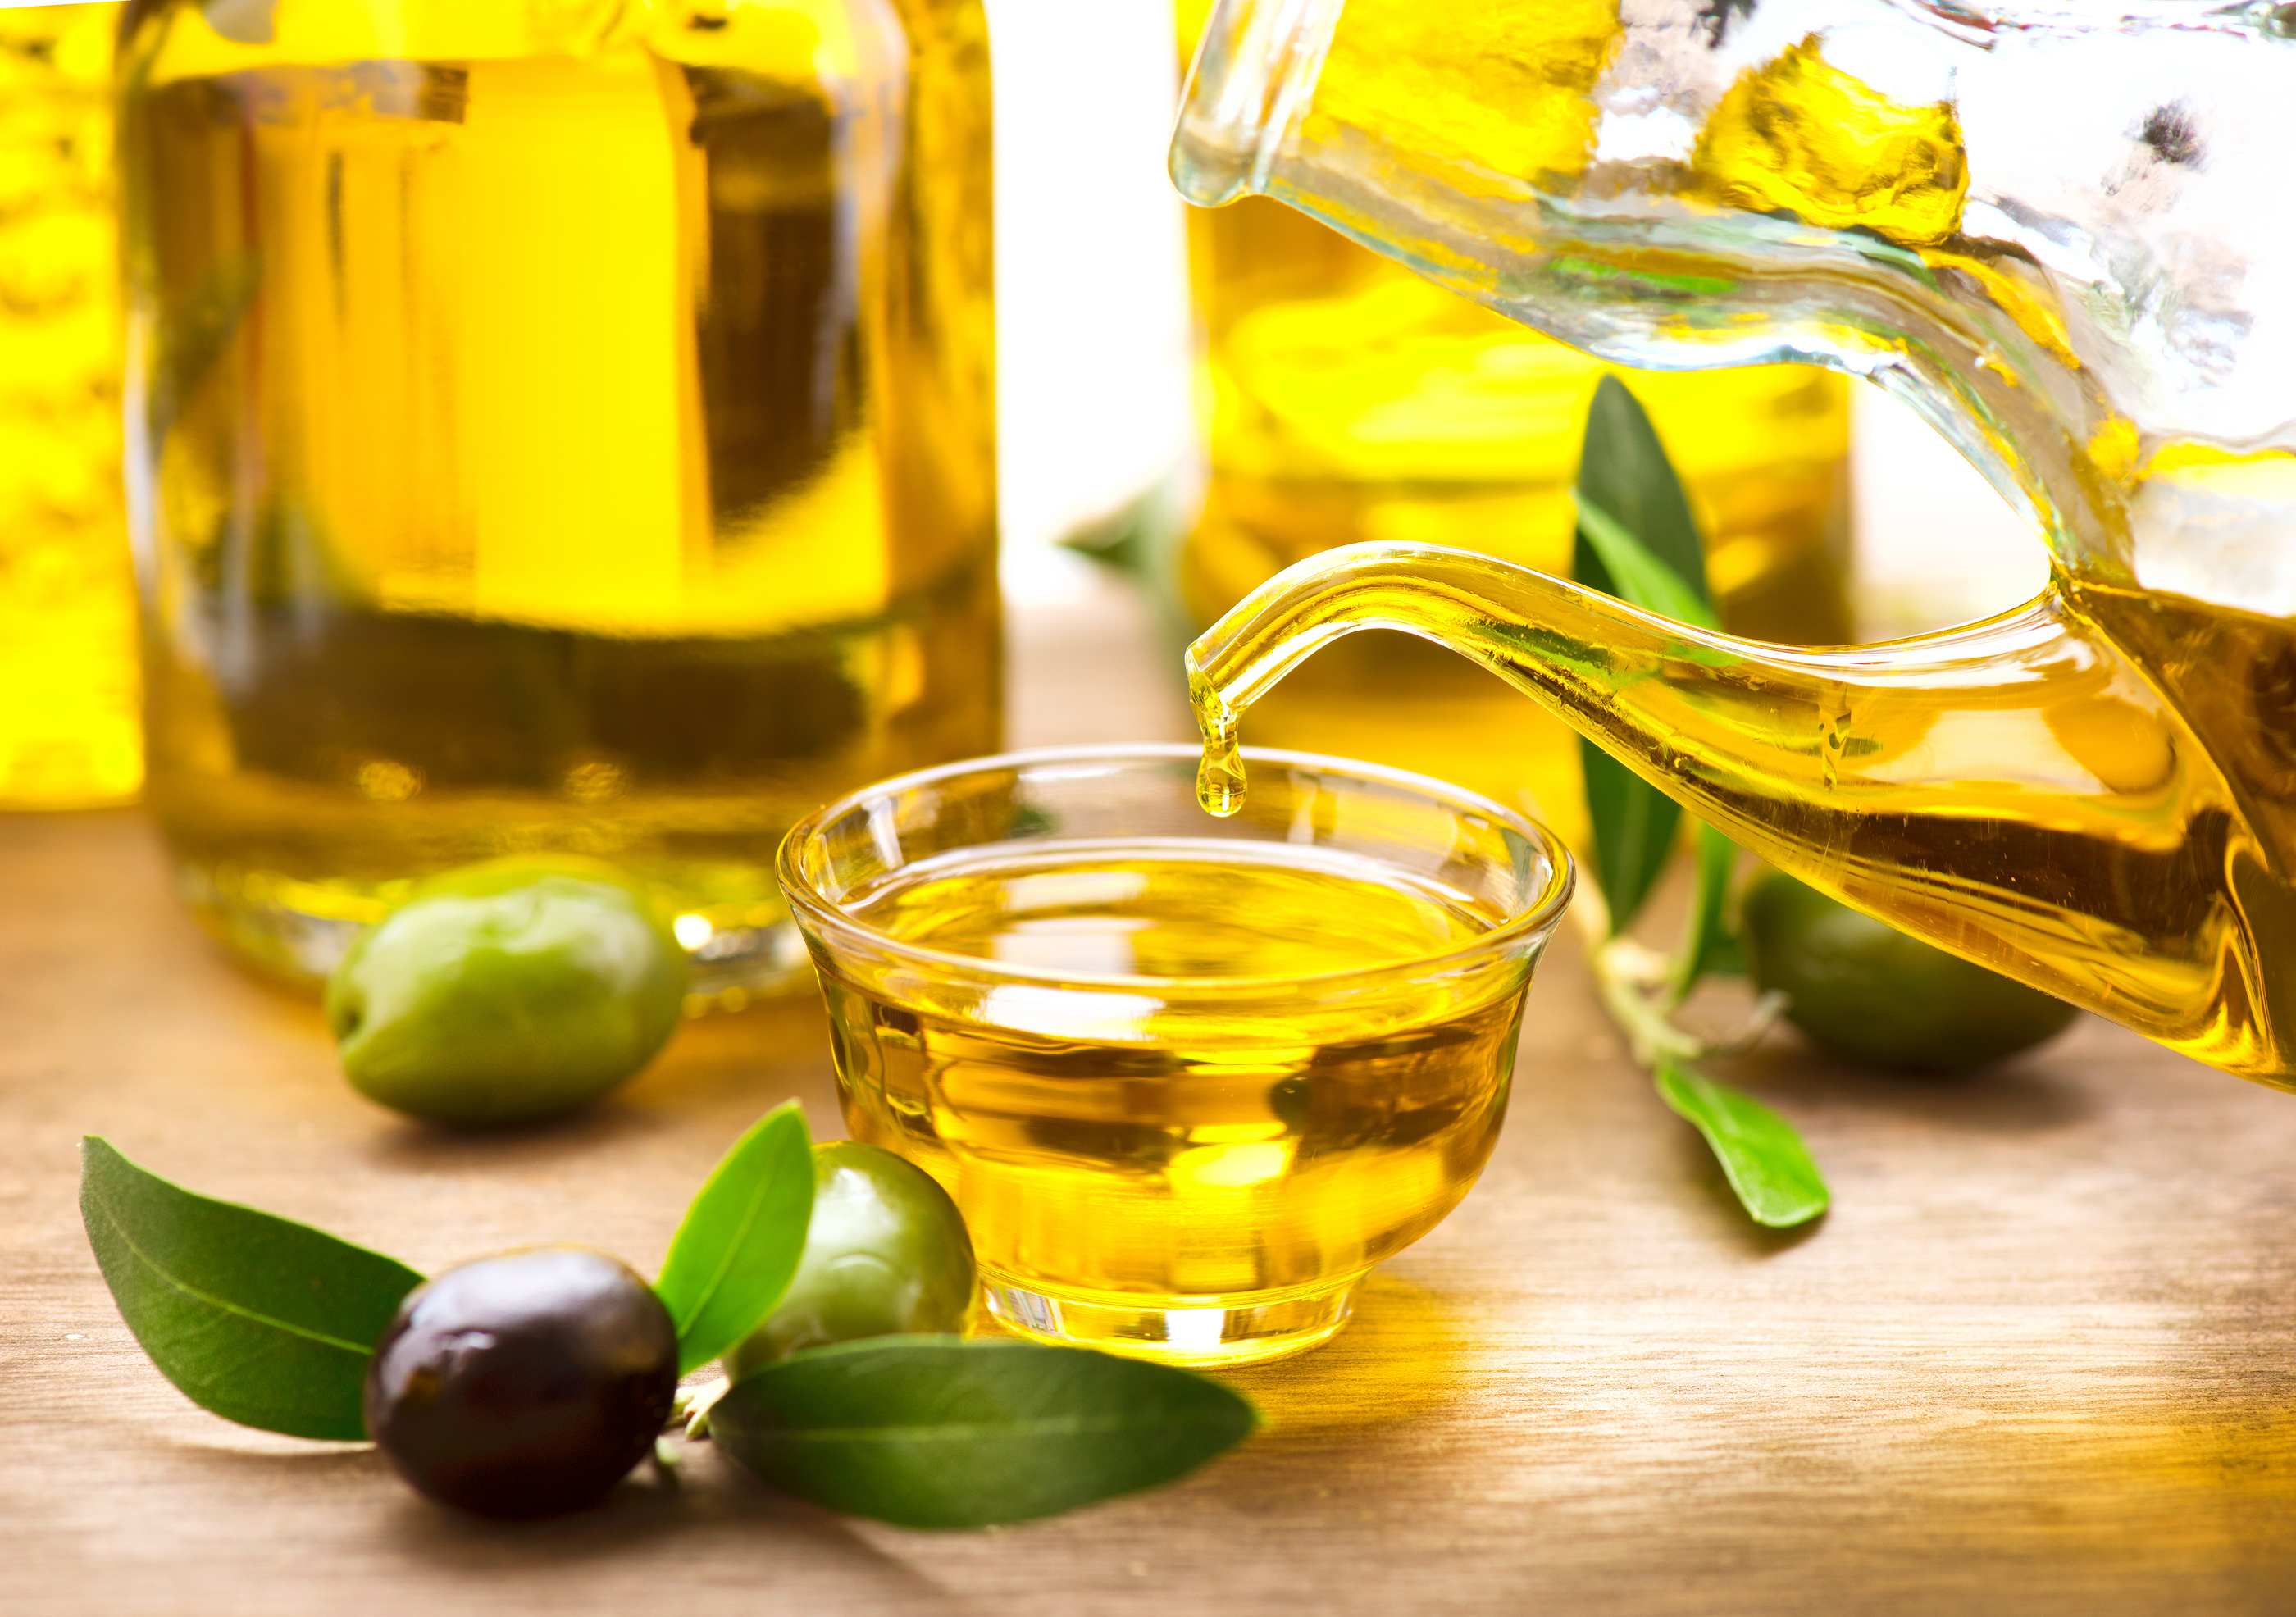 Олив Ойл масло оливковое. Масло оливковое natural Olive Oil. Оливки и оливковое масло. Рыбий жир, оливковое масло. Запах оливкового масла